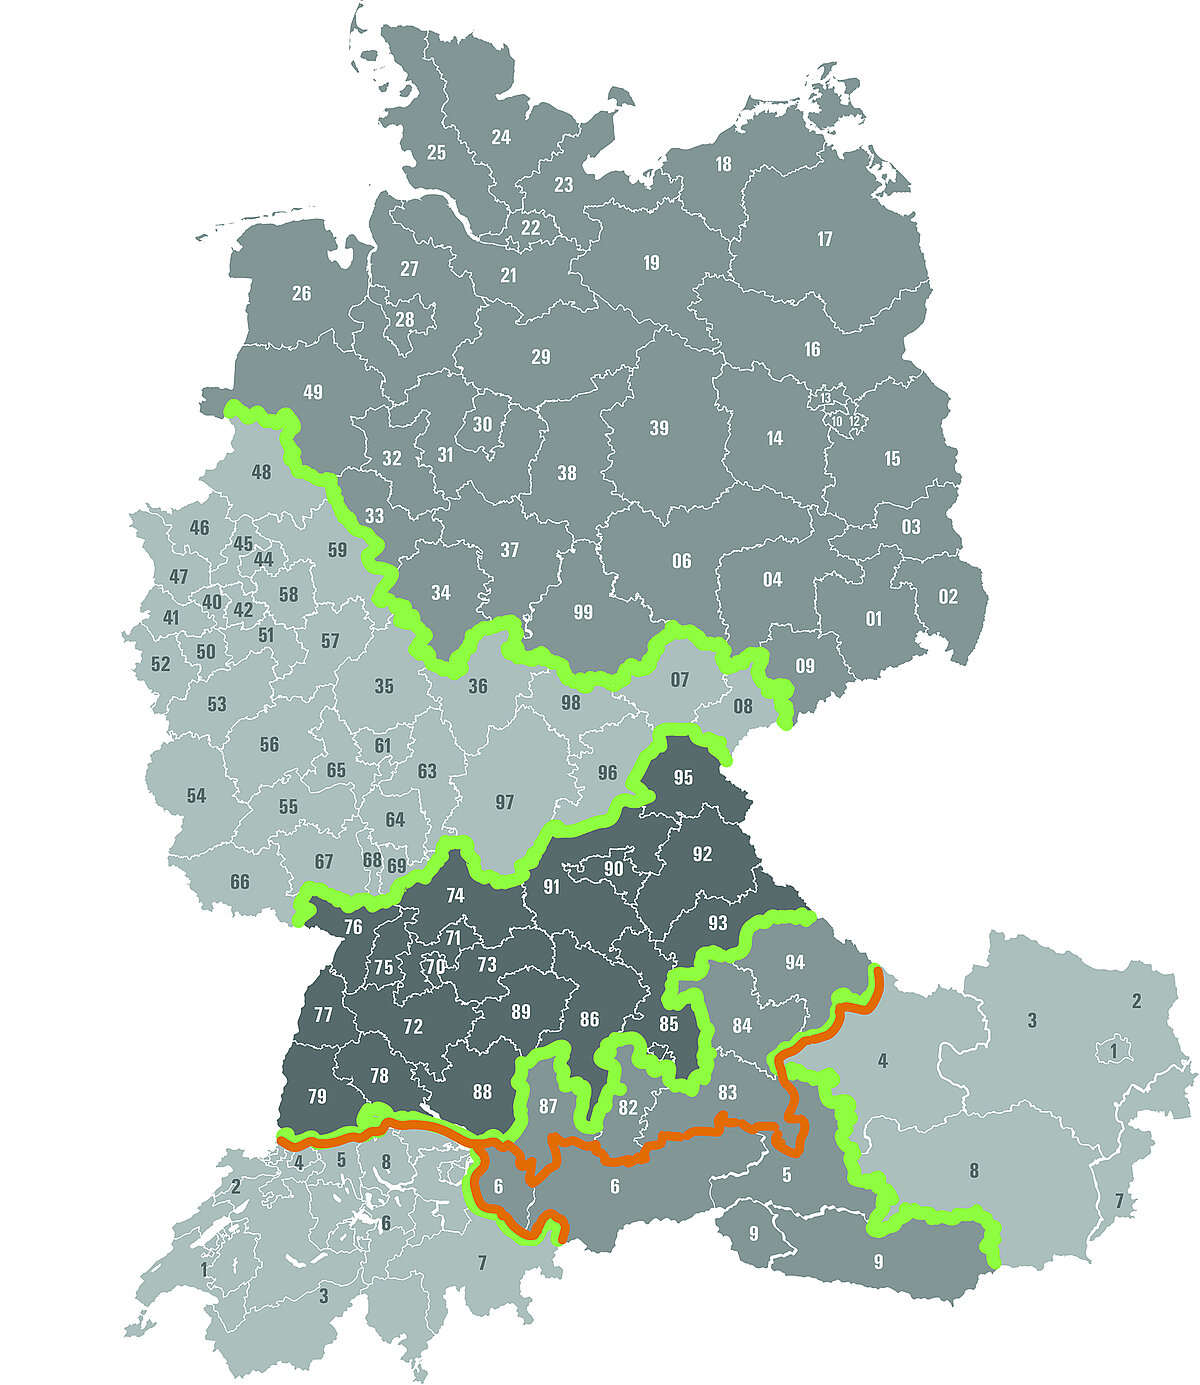 Bild: NEFF Map mit Schweiz